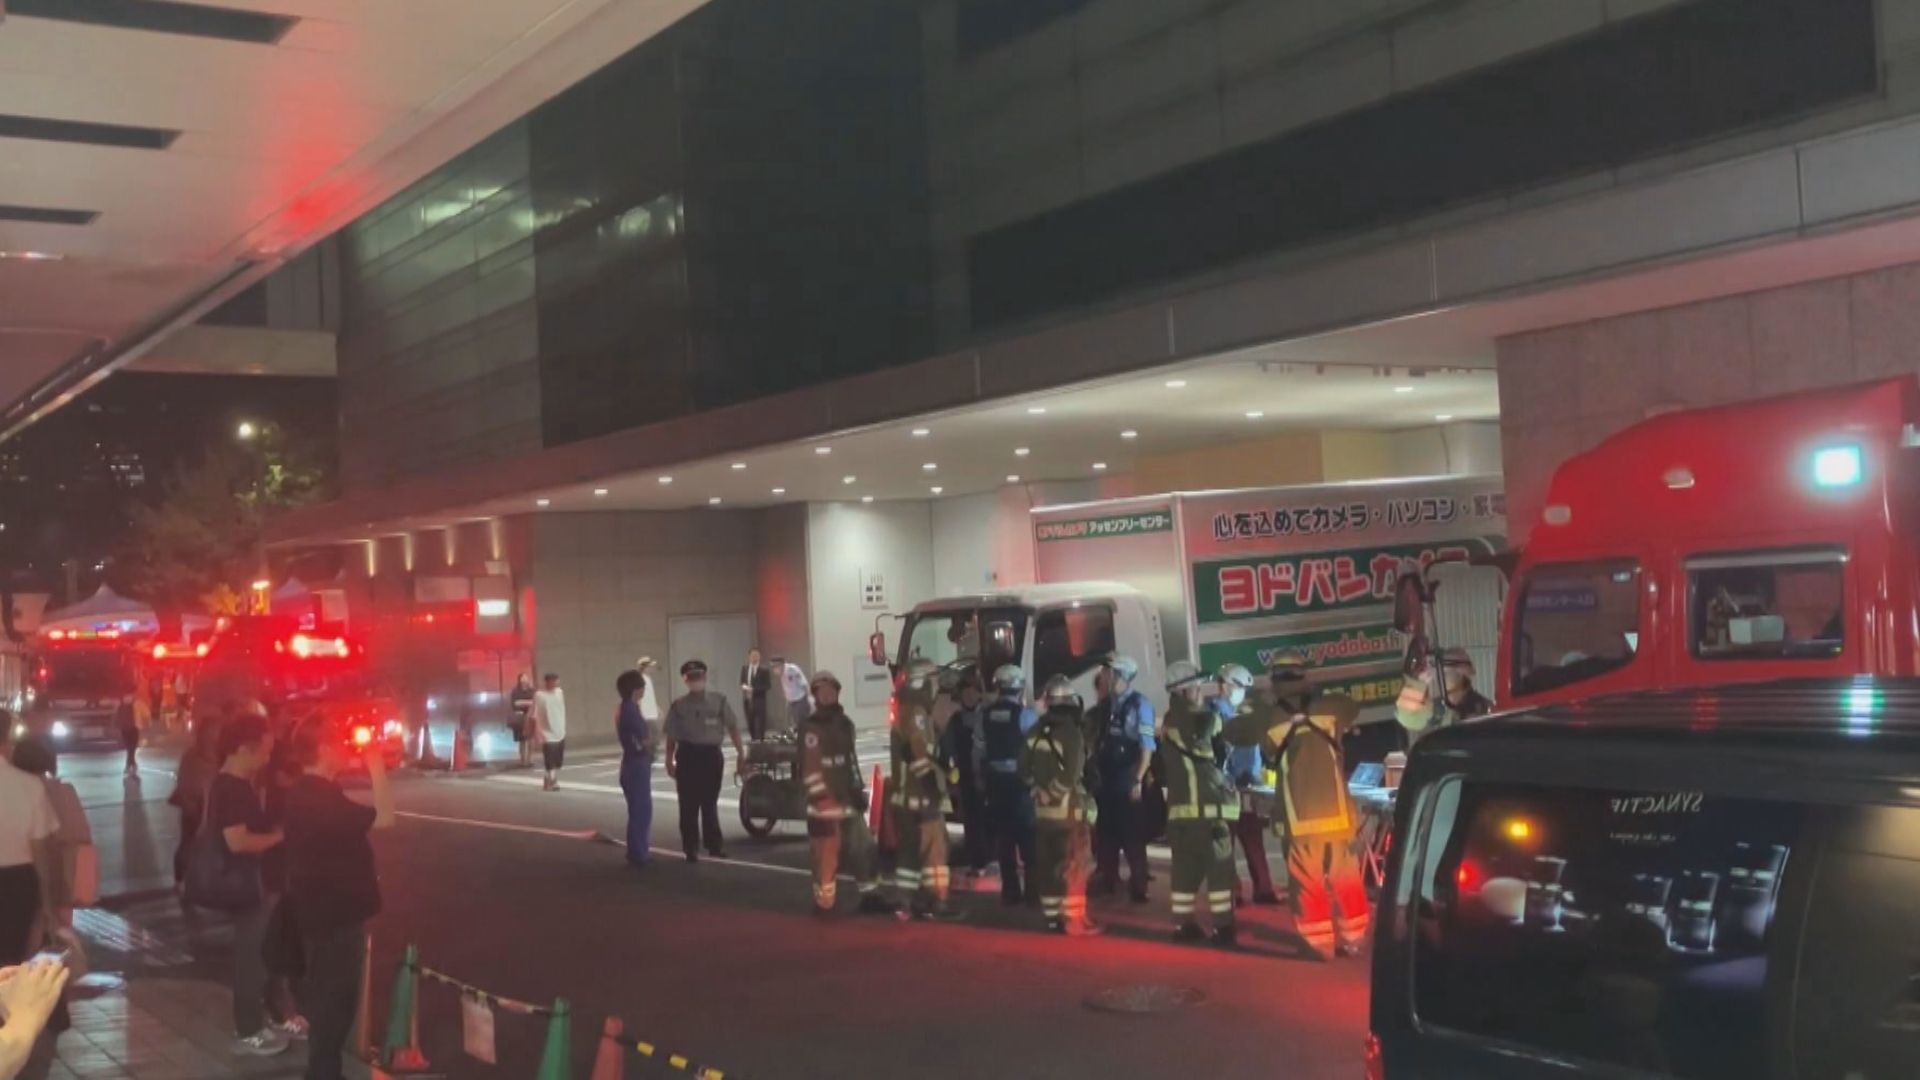 松坂屋名古屋店の荷物運搬用の昇降機付近から煙　火は確認されずけが人は無し　（メ〜テレ（名古屋テレビ）） - Yahoo!ニュース